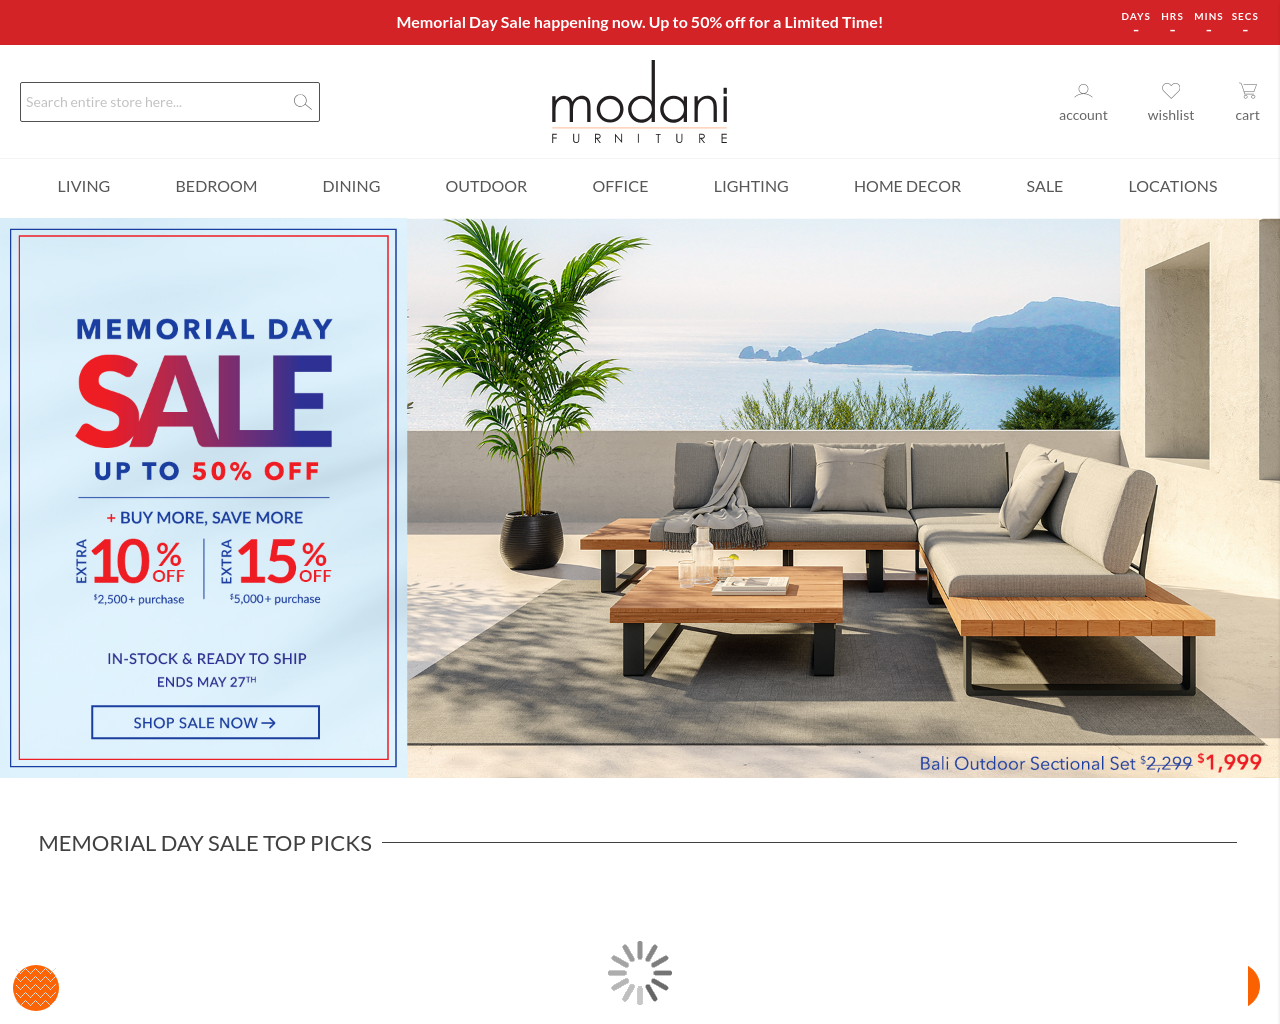 modani.com